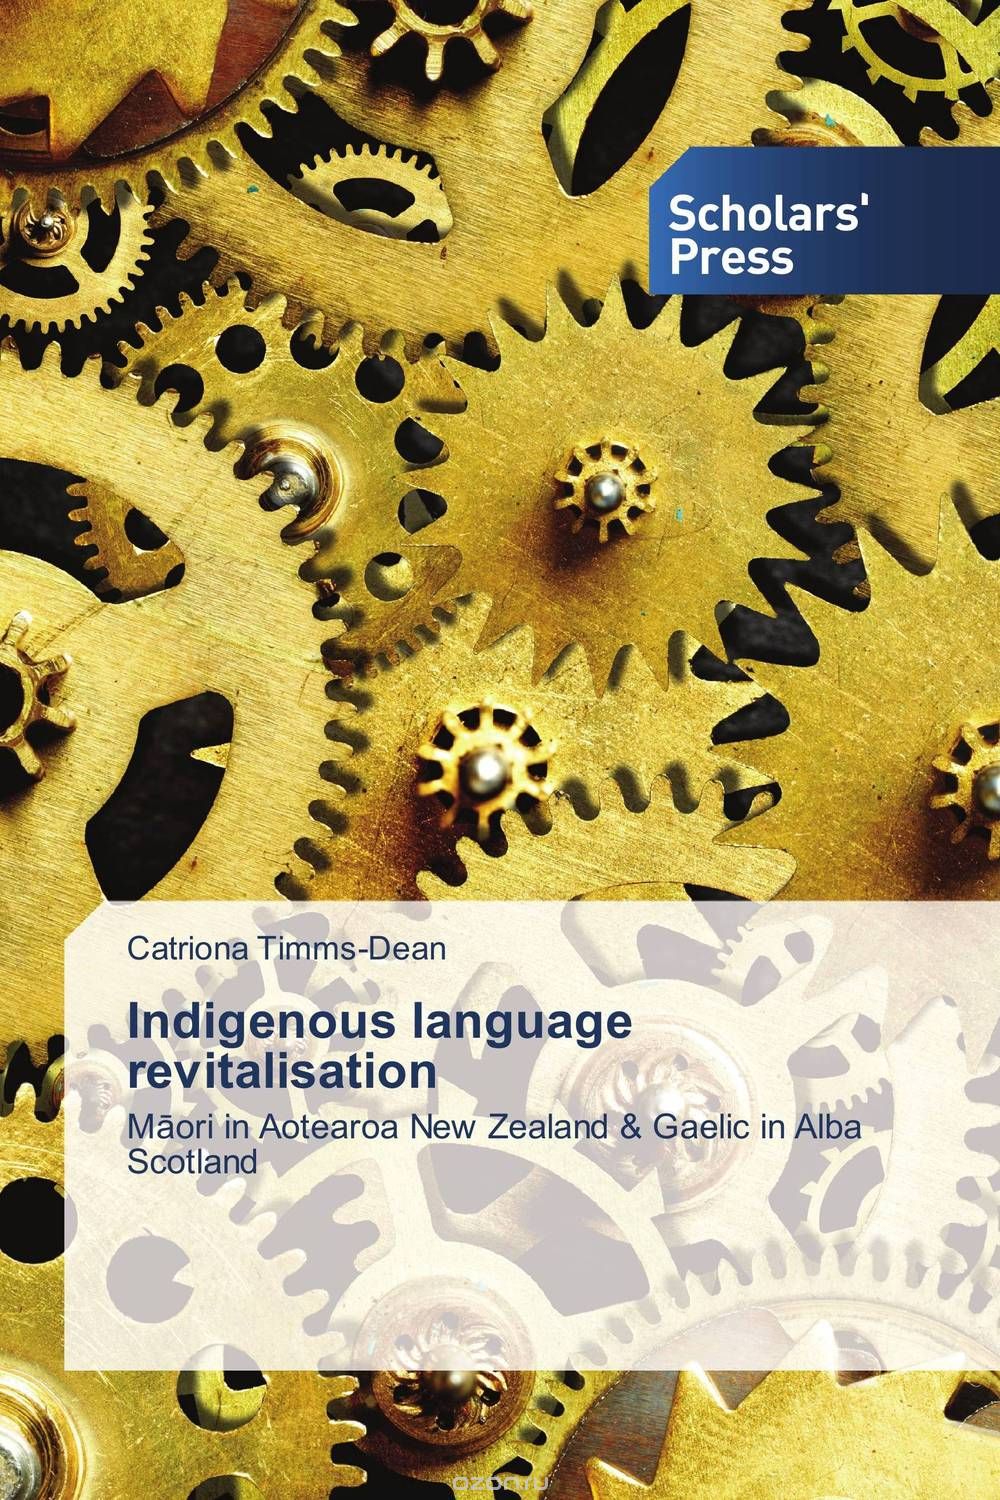 Скачать книгу "Indigenous language revitalisation"